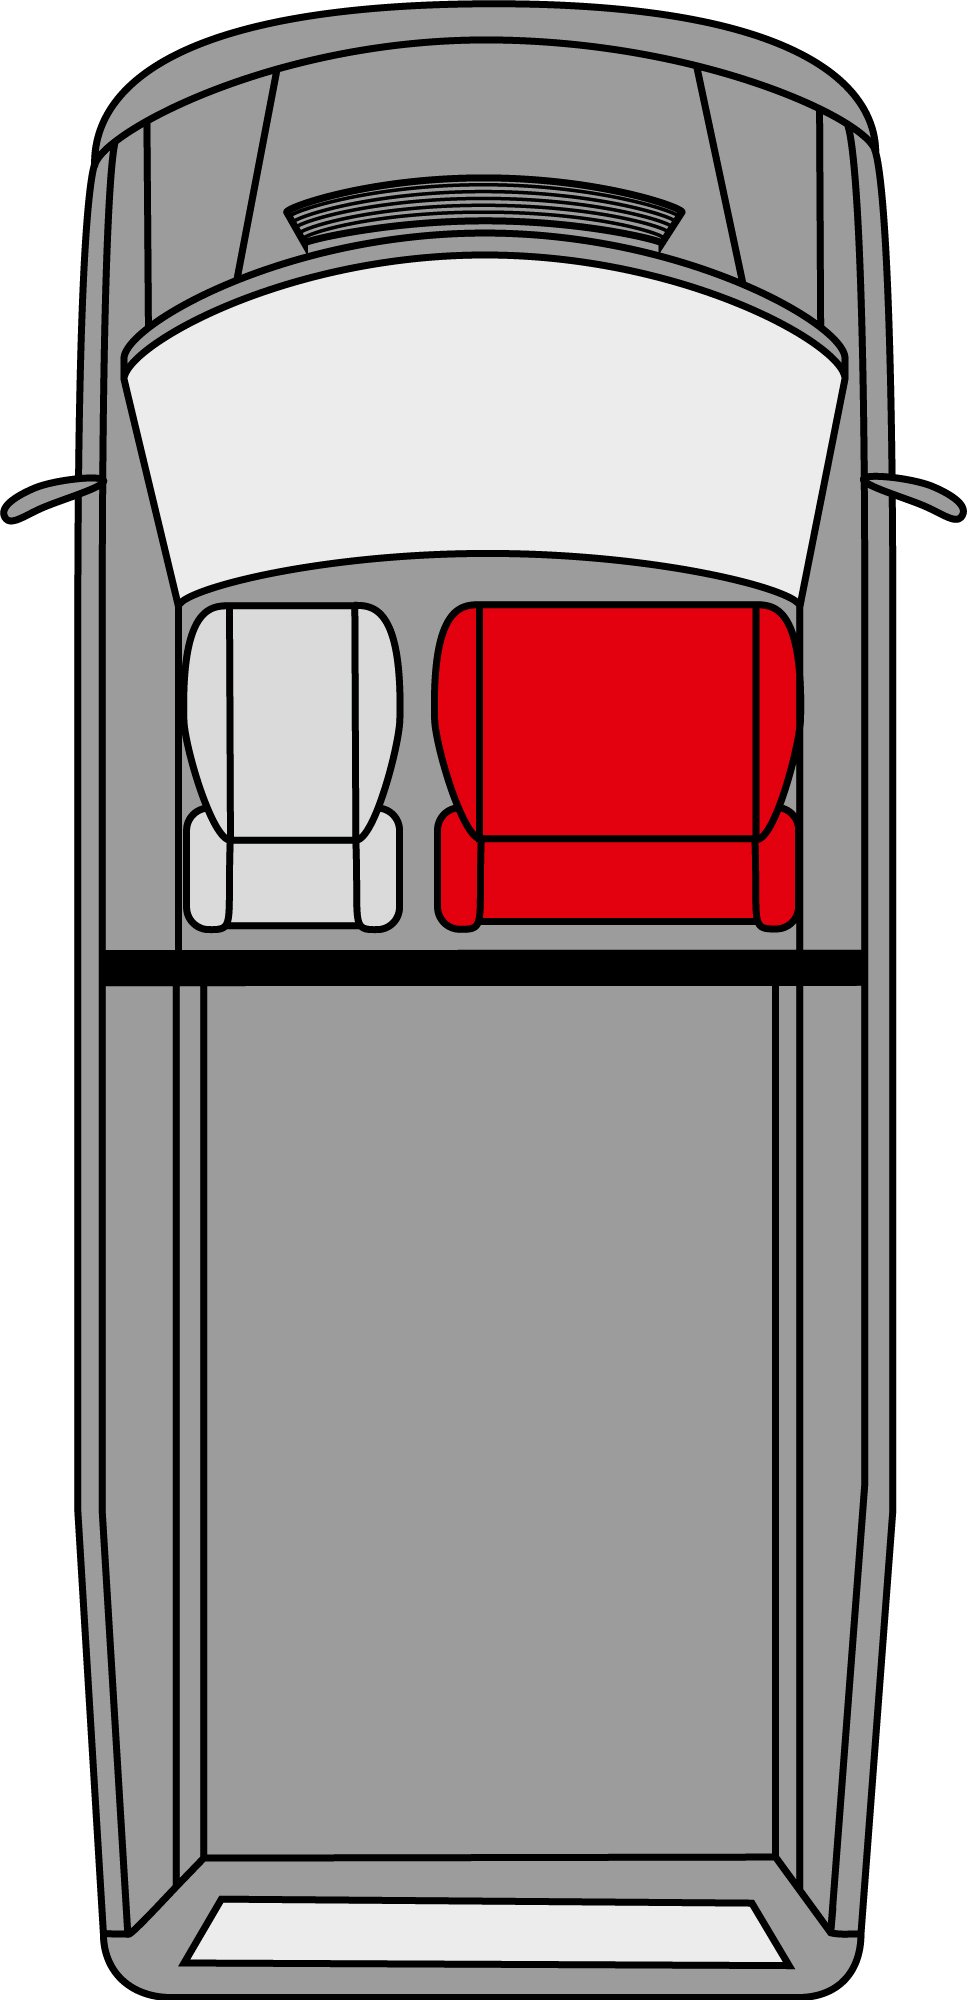 Autoschonbezug Transporter aus Stoff für Mercedes Vito 447, Doppelbank vorne